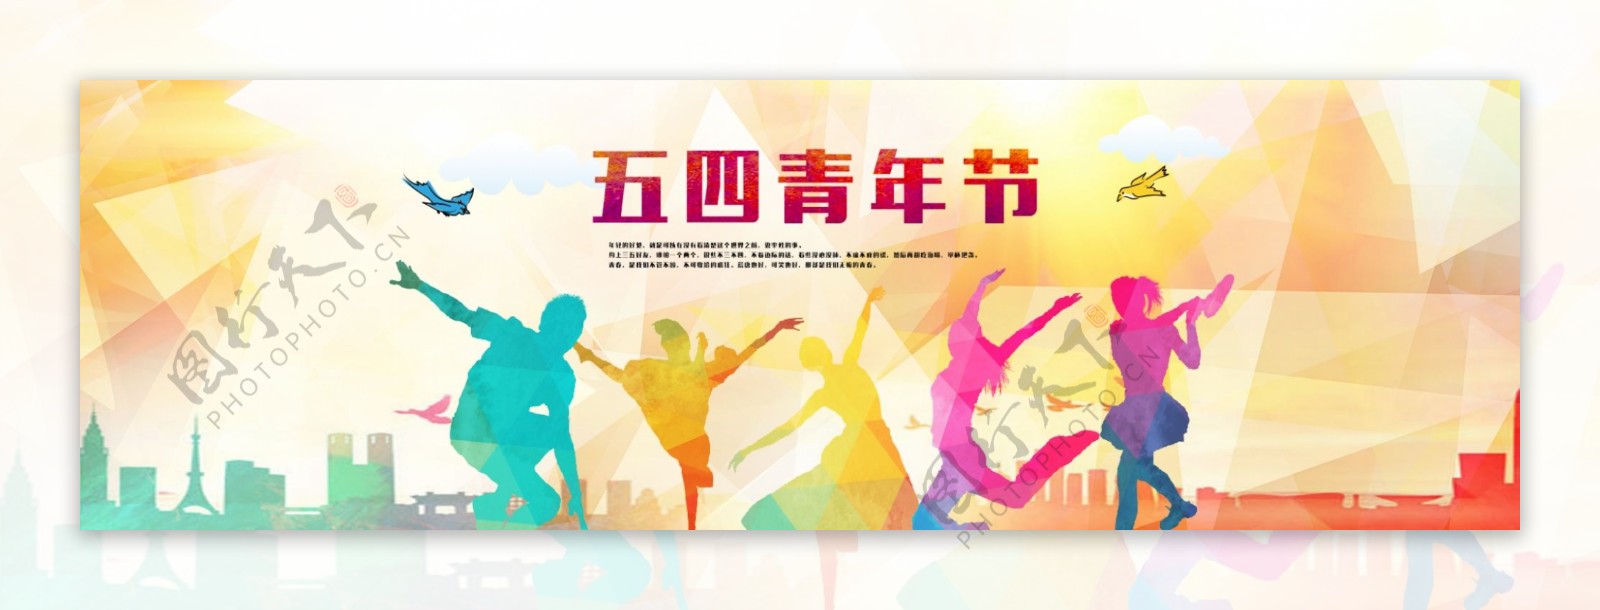 五四青年节网站banner设计